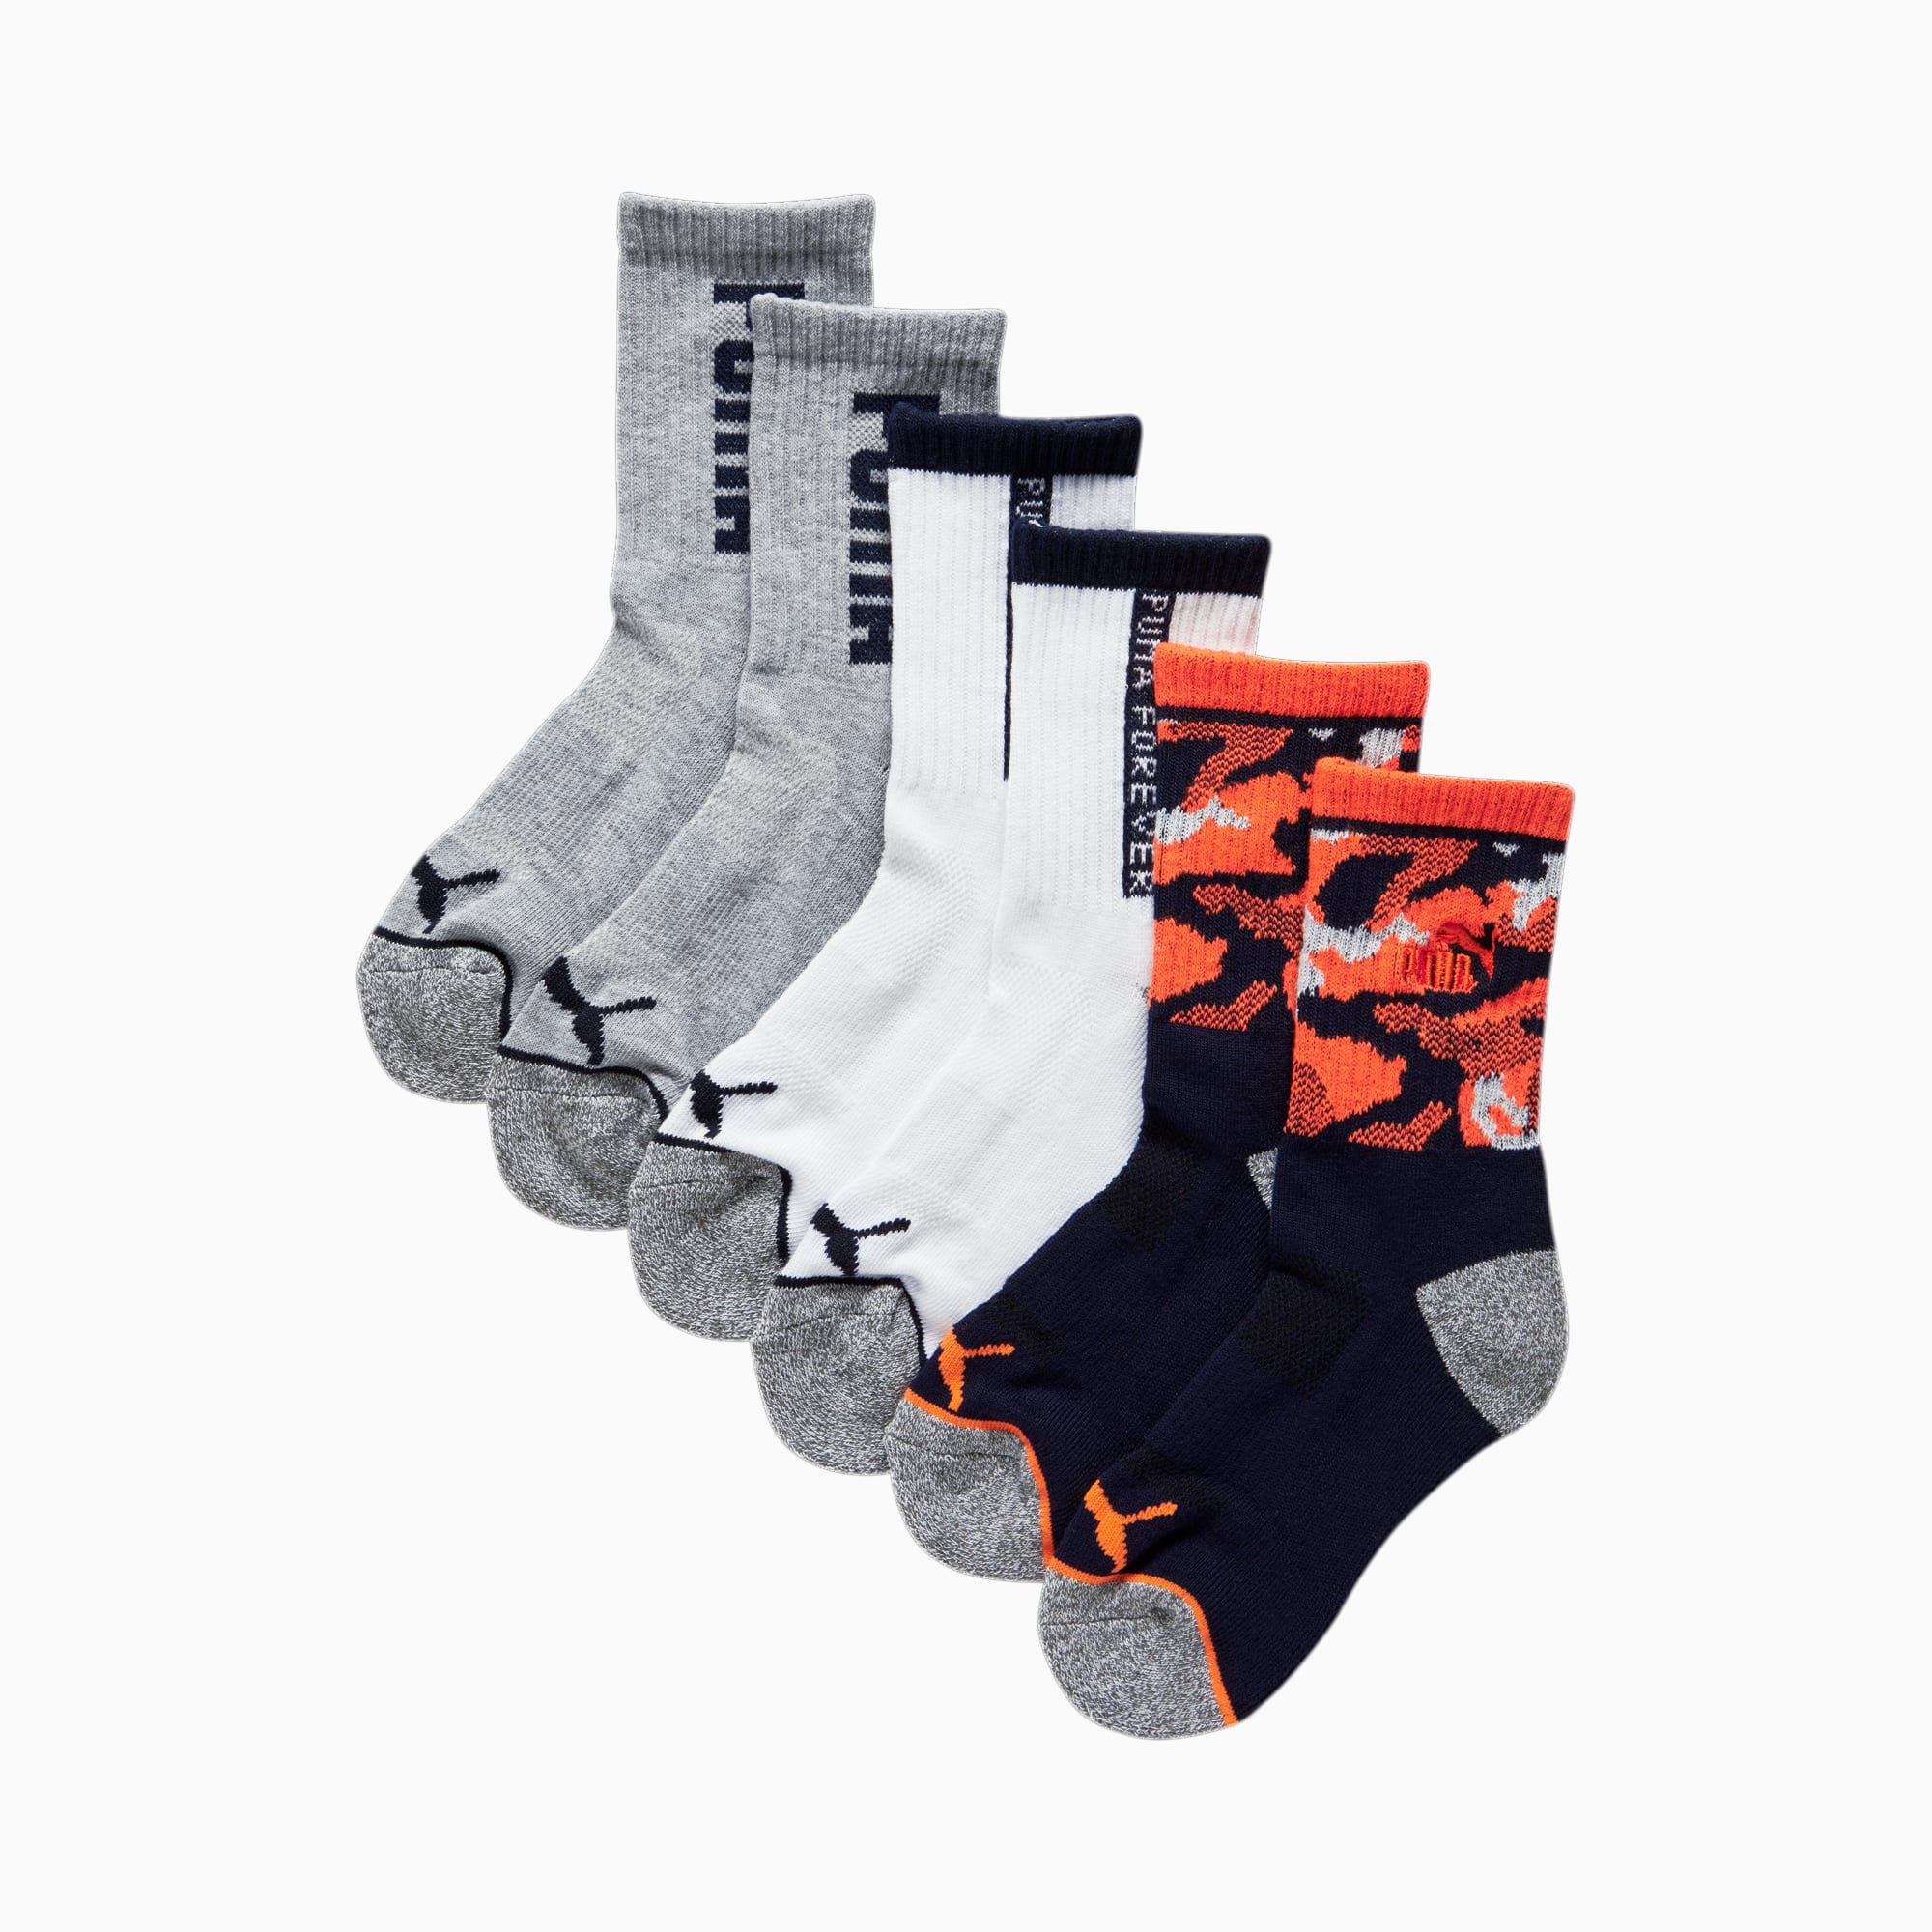 Boys' Half-Terry Quarter Length Socks (3 Pack)